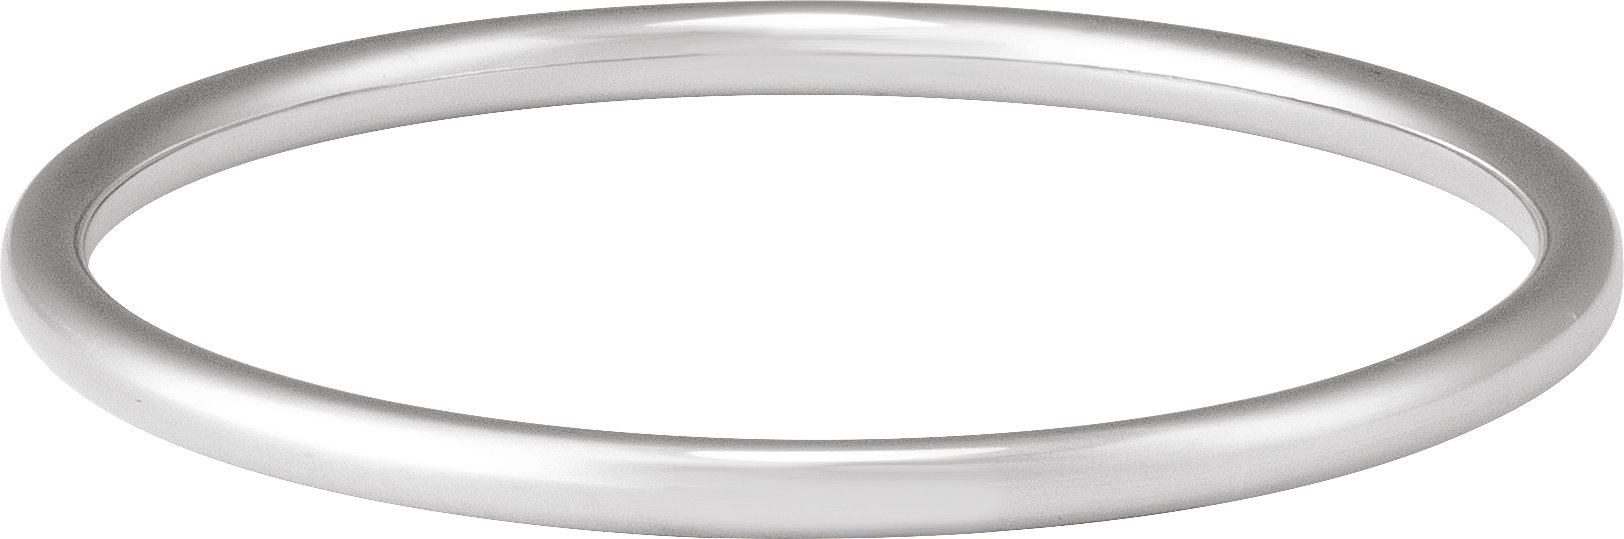 Sterling Silver 4 mm Bangle 7 3/4" Bracelet